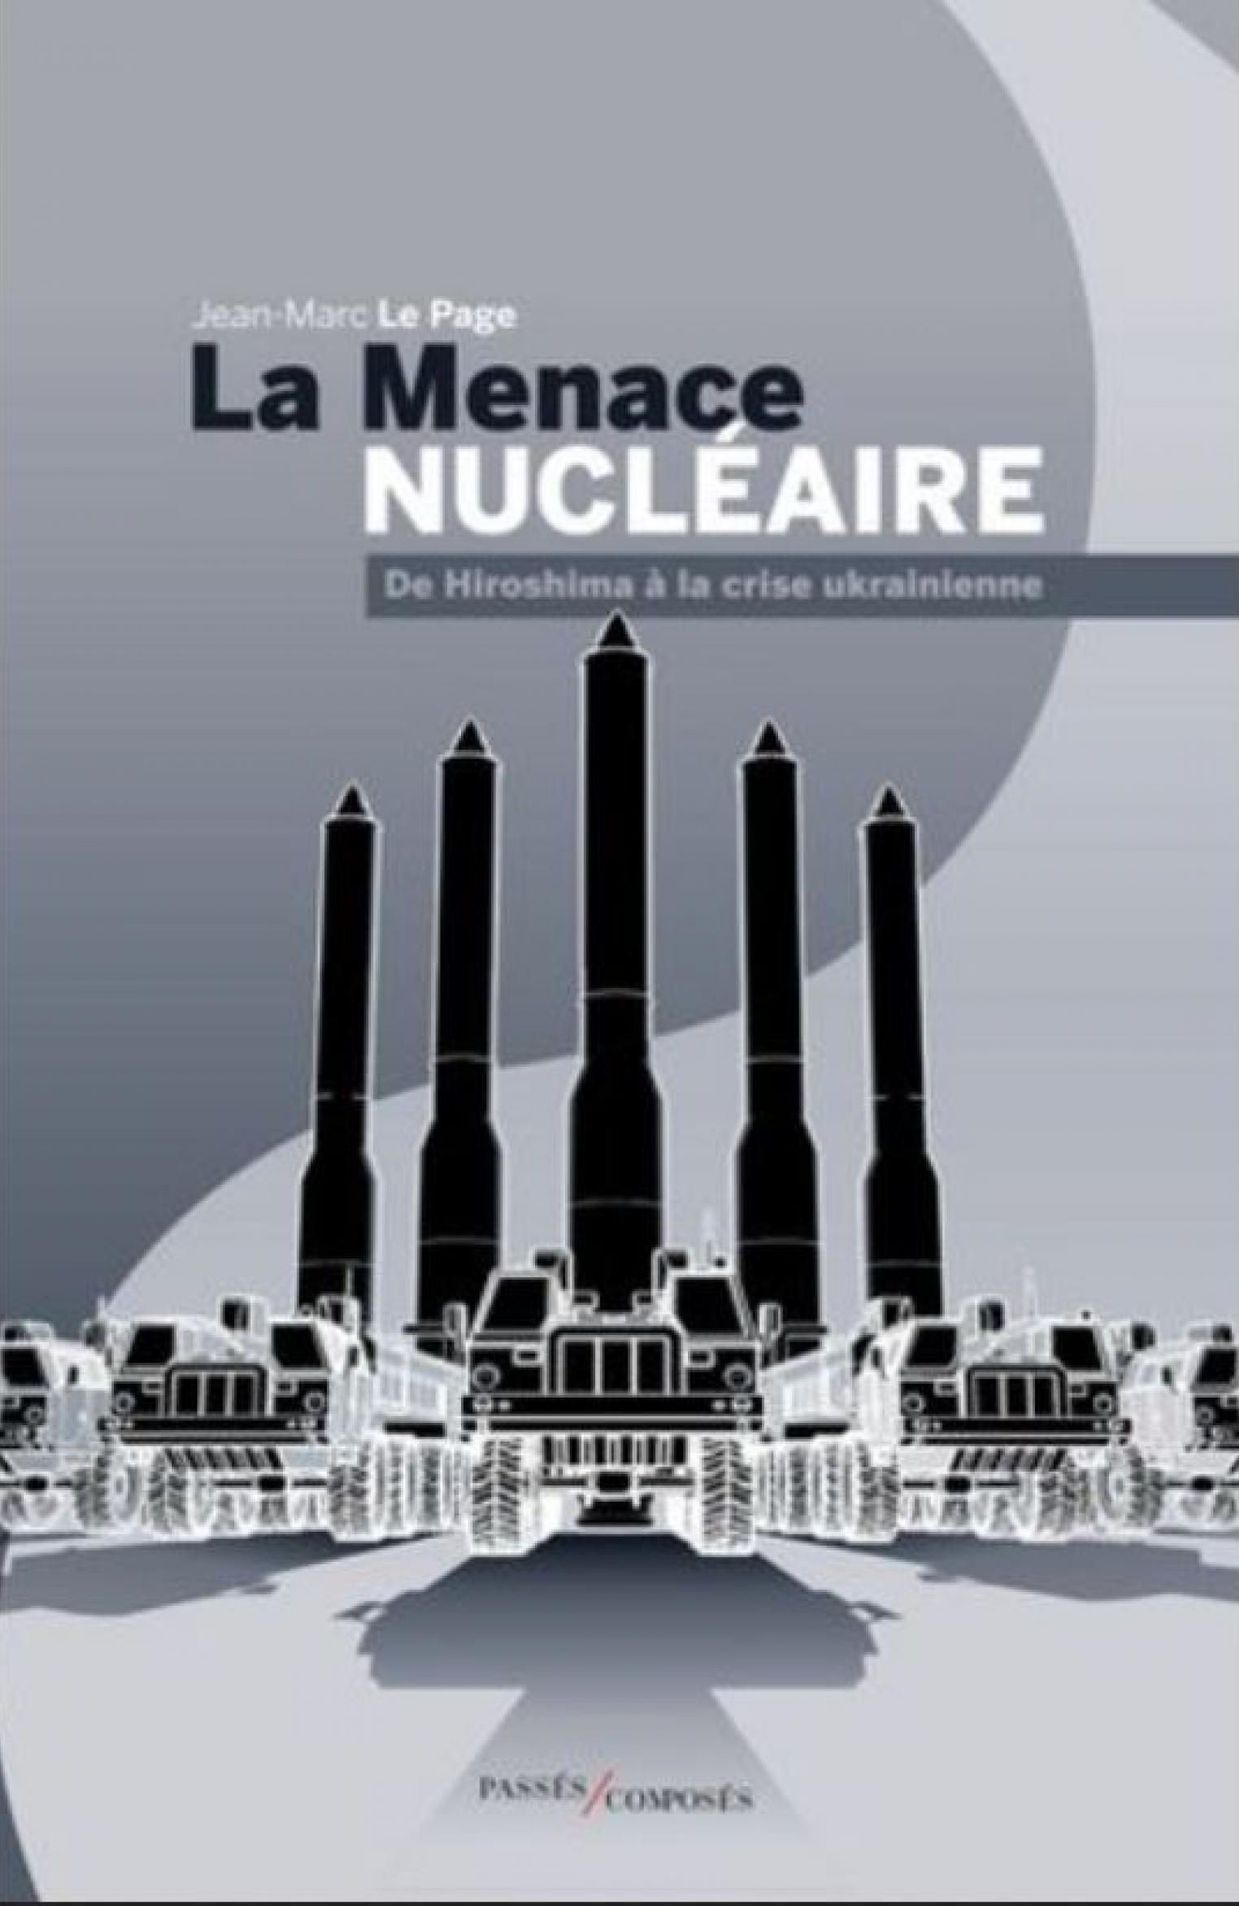 La menace nucléaire, de Jean-Marc Le Page
